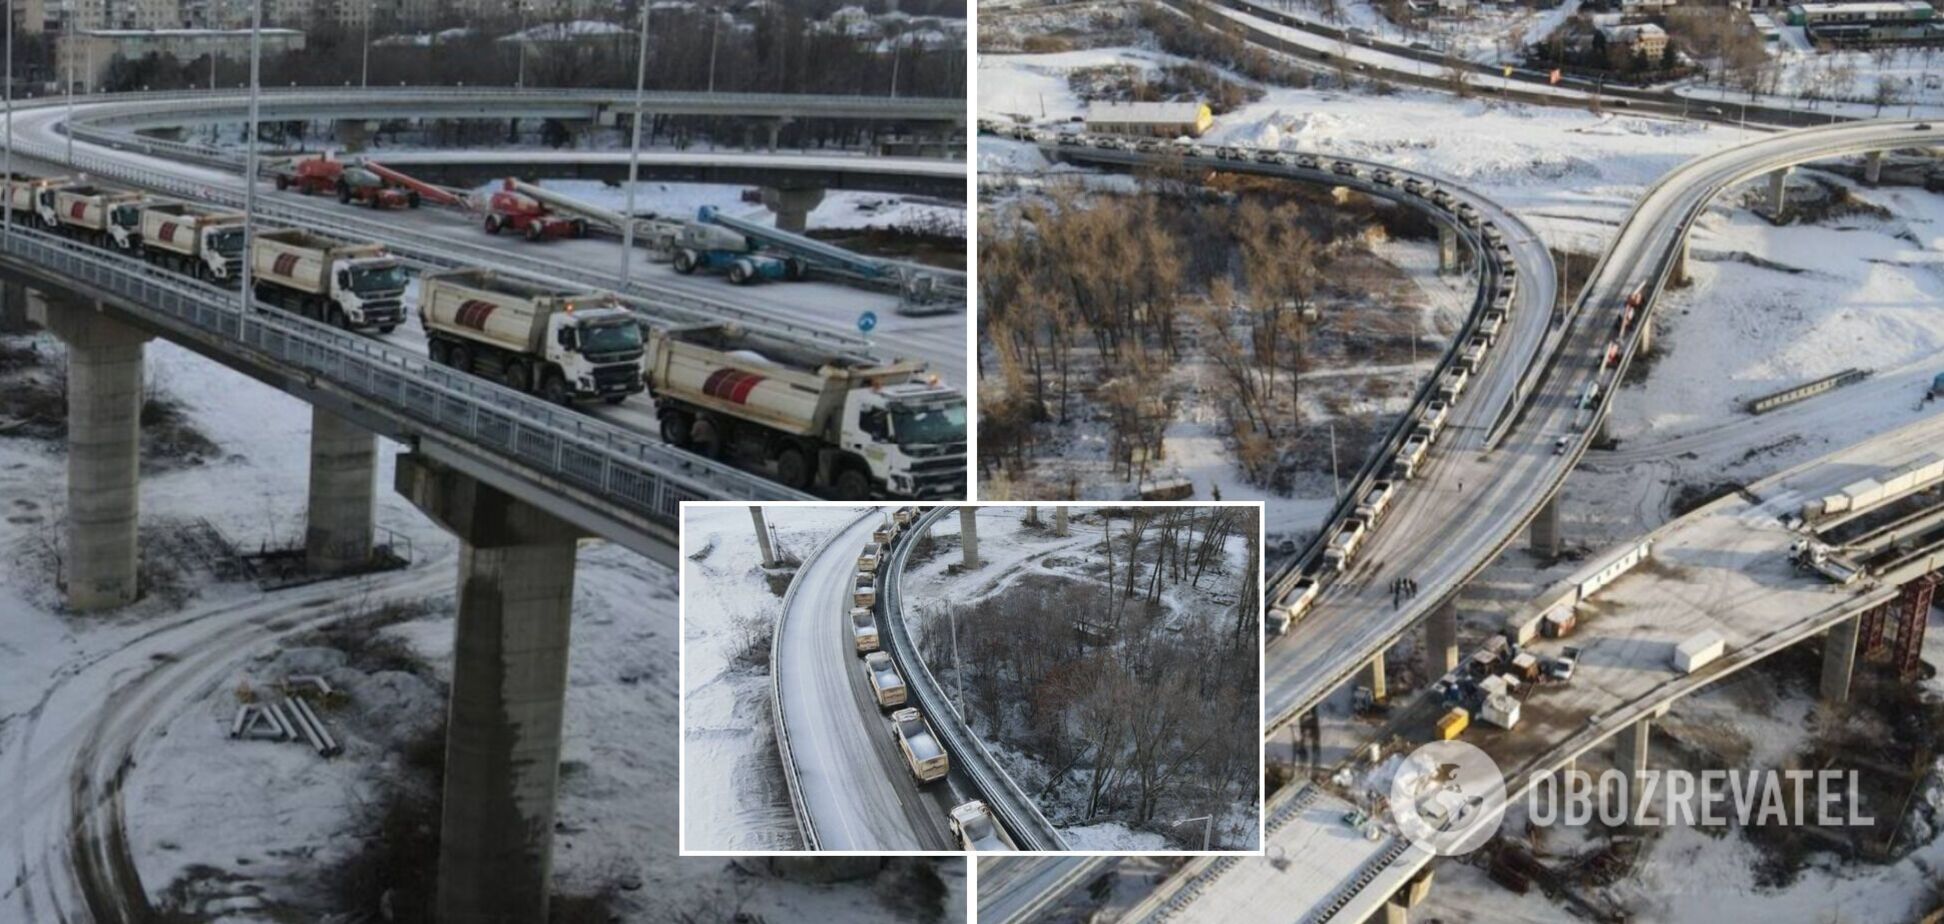 'Большая стройка' опробовала на прочность новый вантовый мост в Запорожье 30 заполненными грузовиками